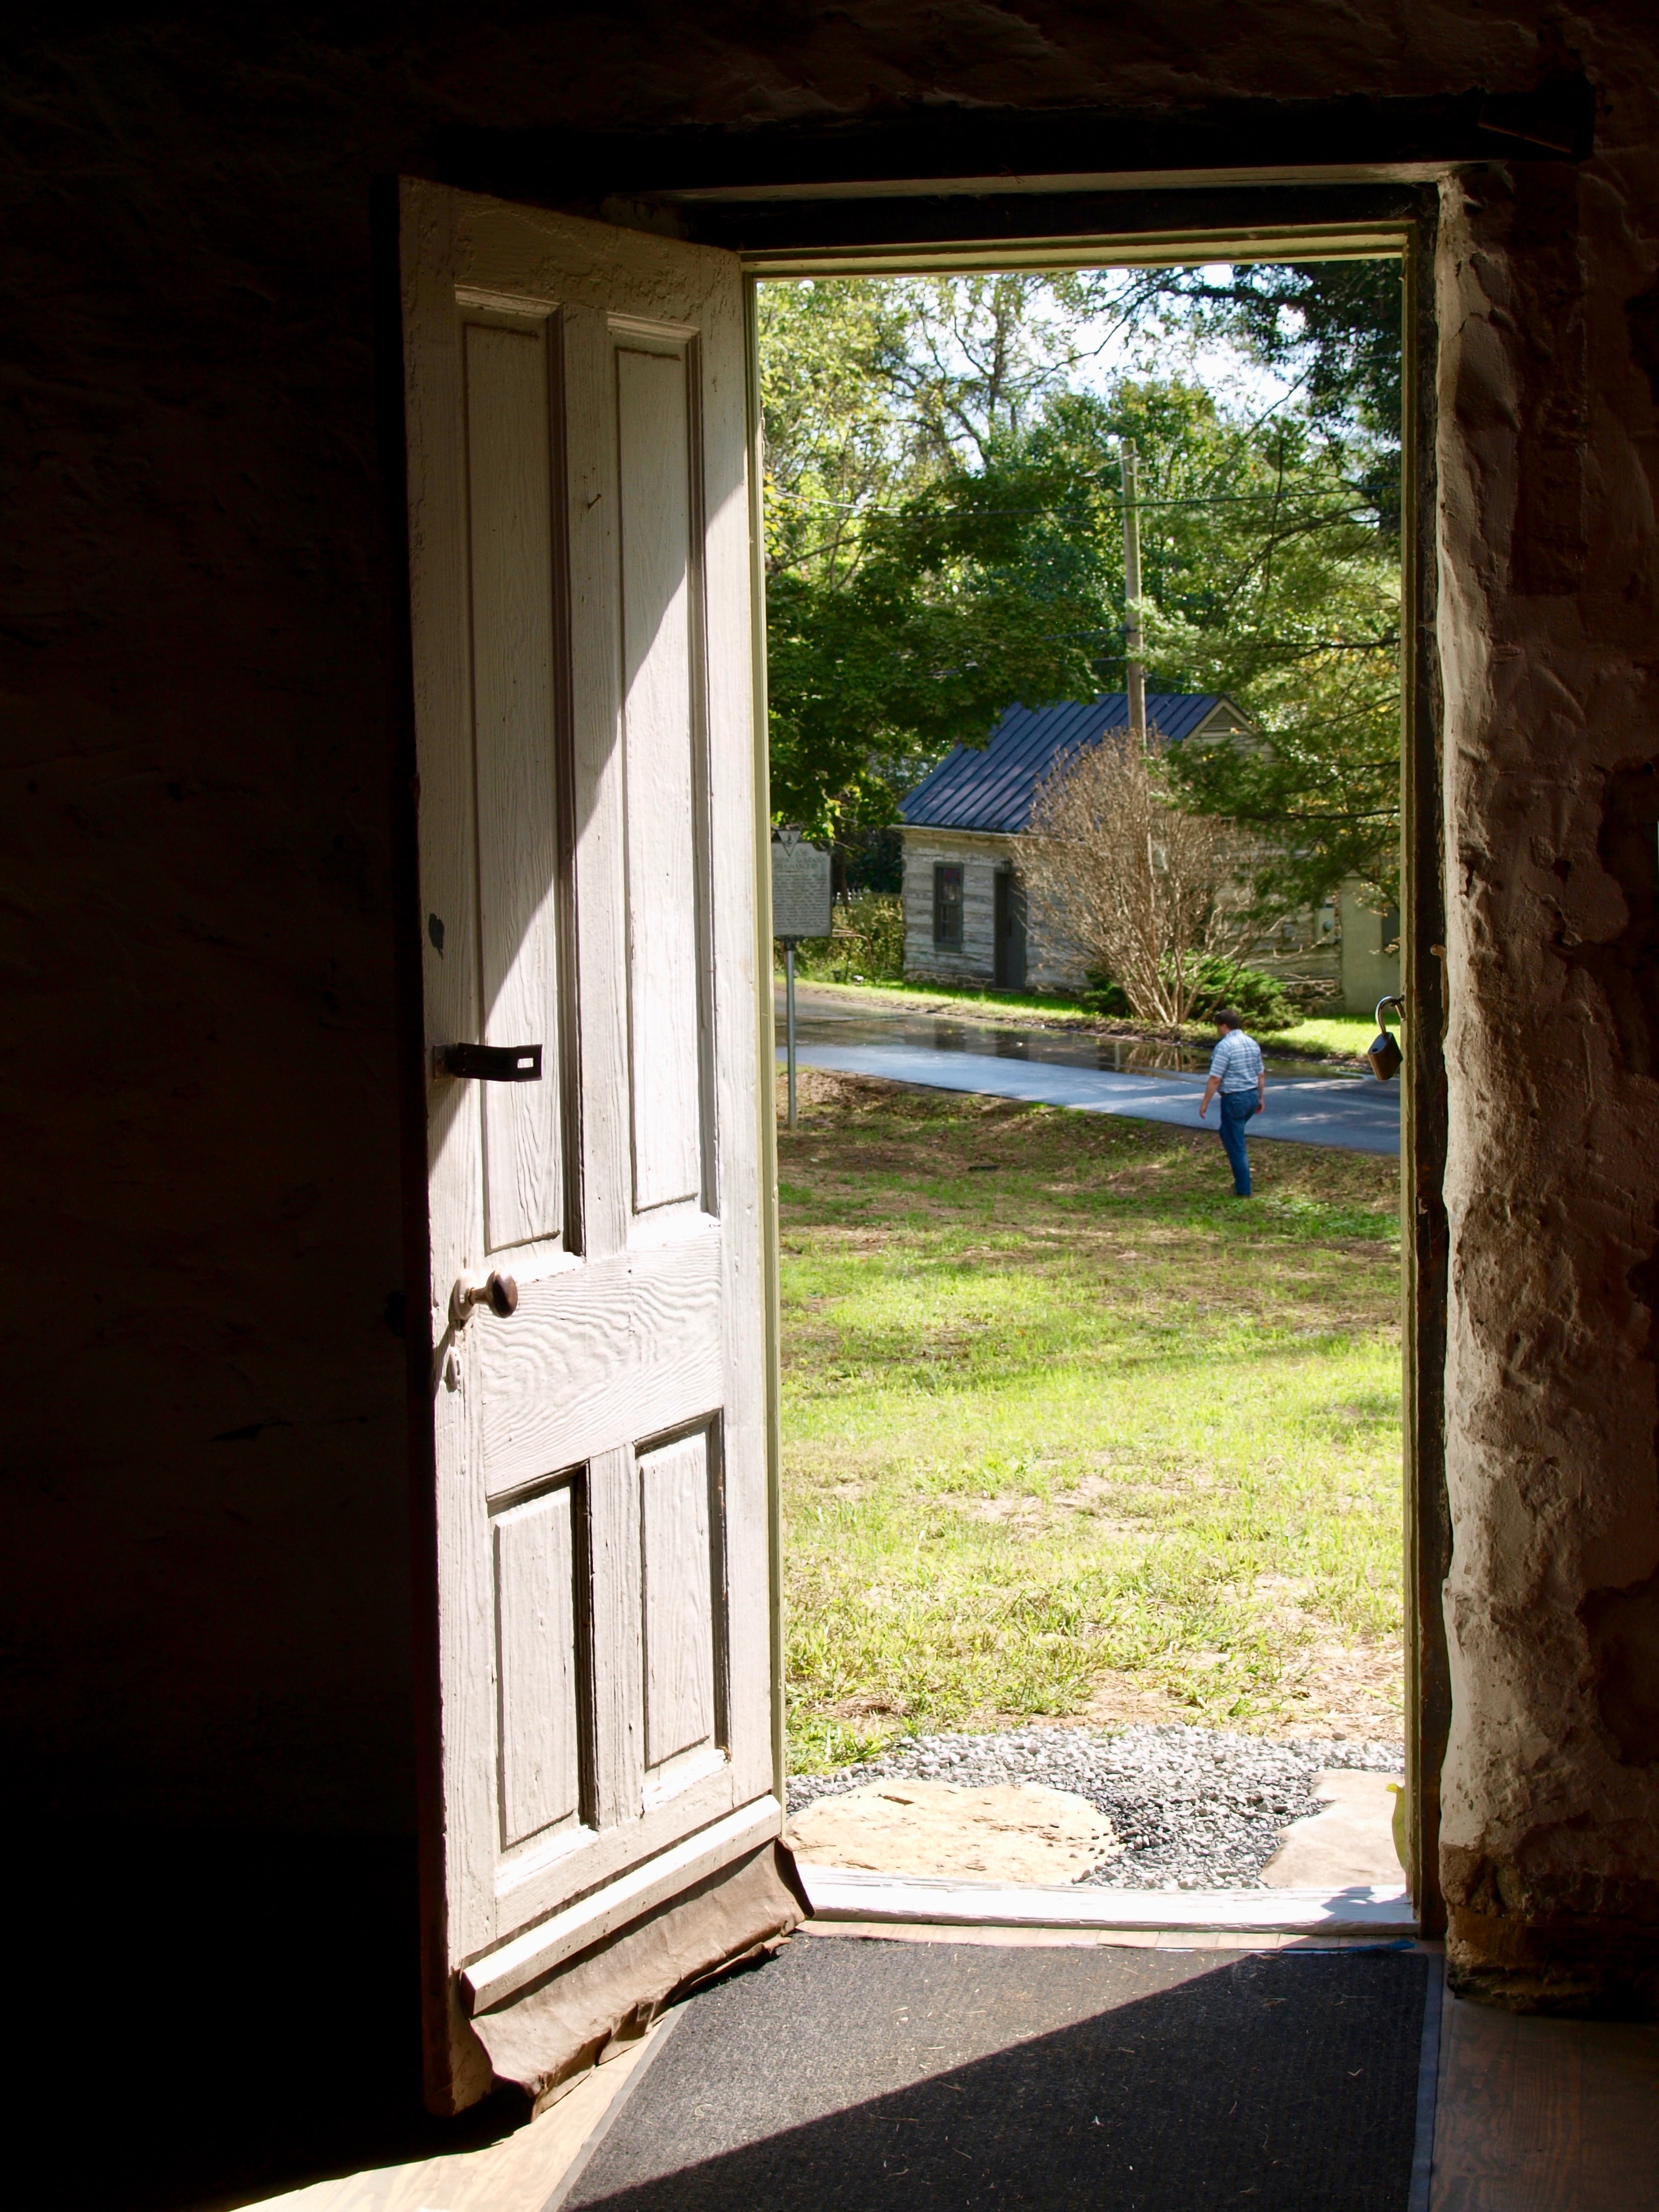 Na imagem: Porta de madeira aberta, ao fundo temos uma grama verde e um caminho indo até a porta.